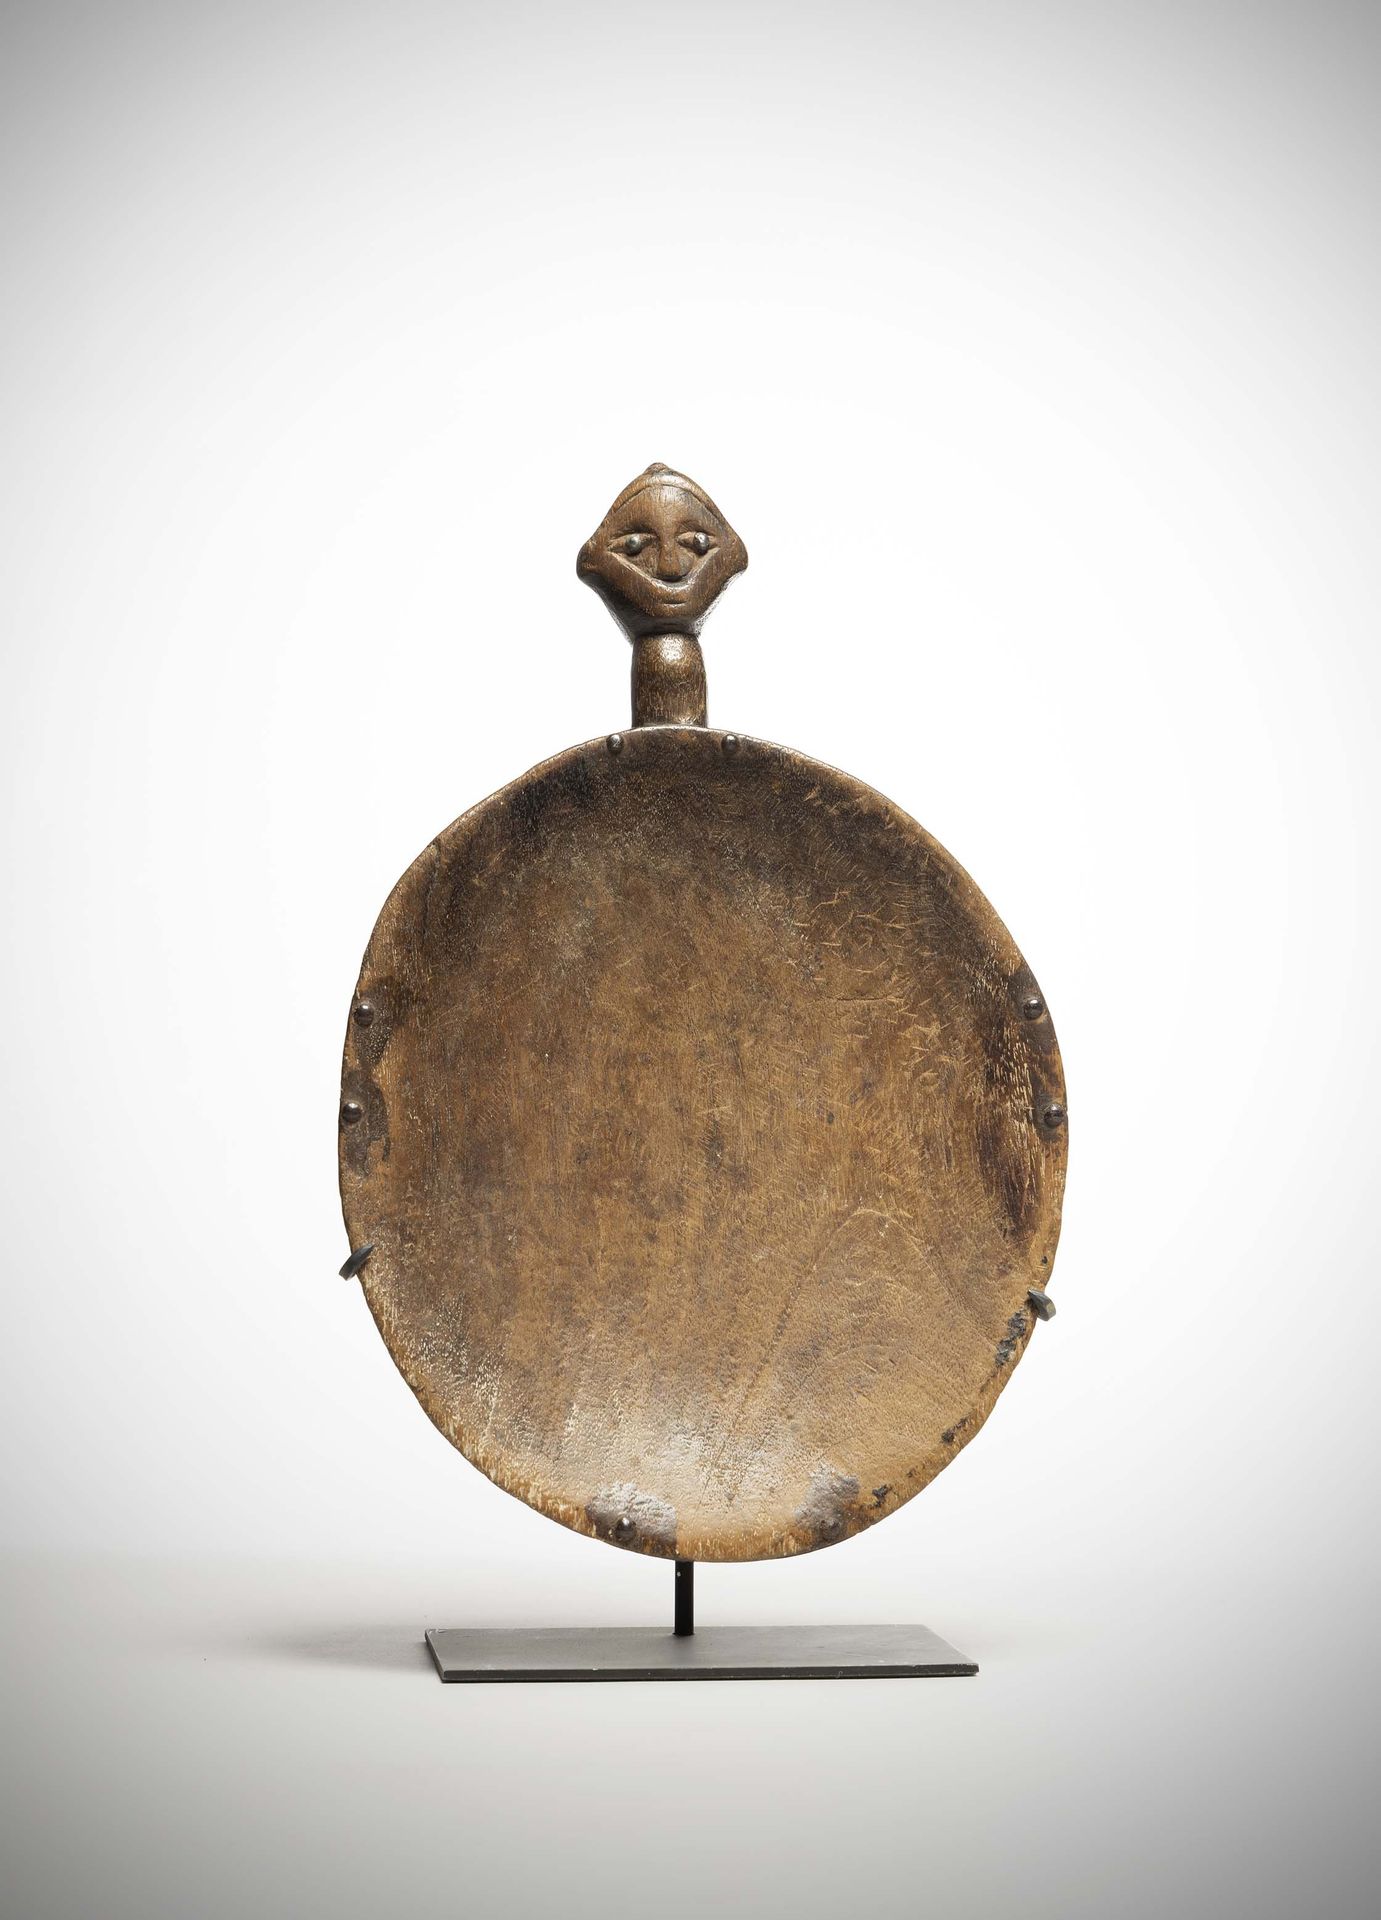 Null Bembé

(DRC)轻质木盘，手柄上装饰有菱形头。

眼睛是由软体家具的钉子压住的，高度：35厘米